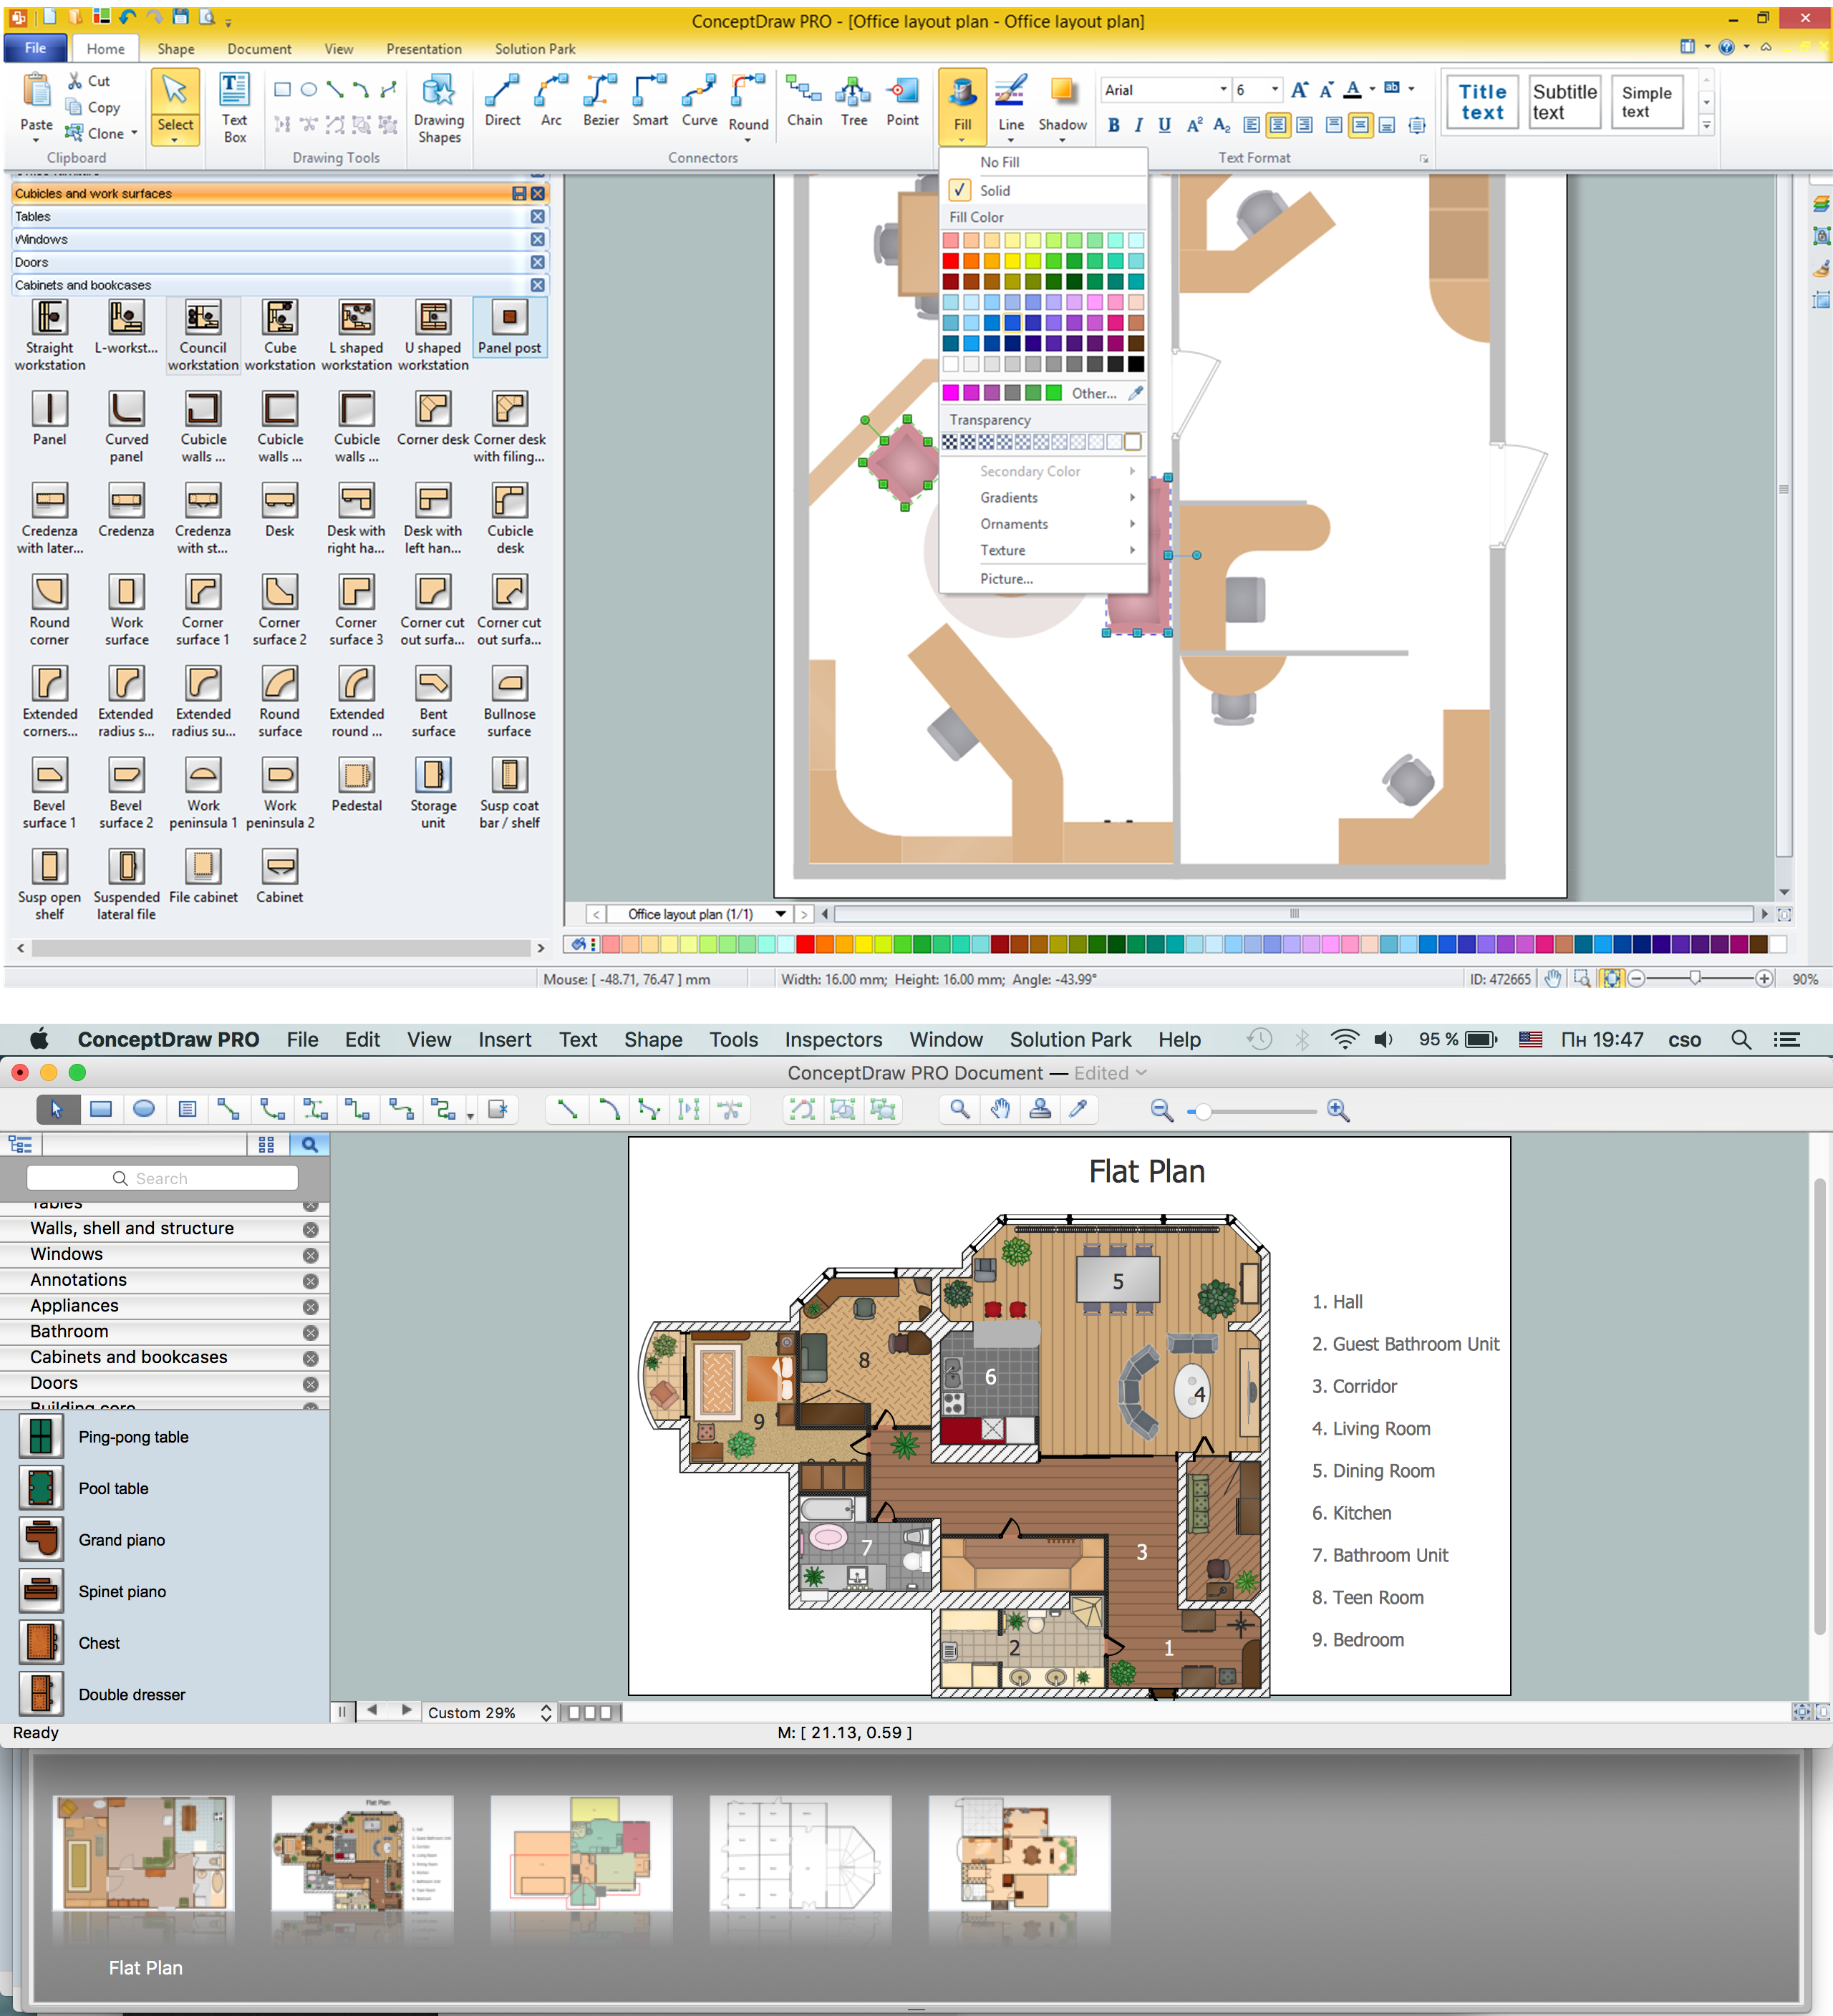 Cad dwg from sketch image pdf floor plan or elevation | Upwork